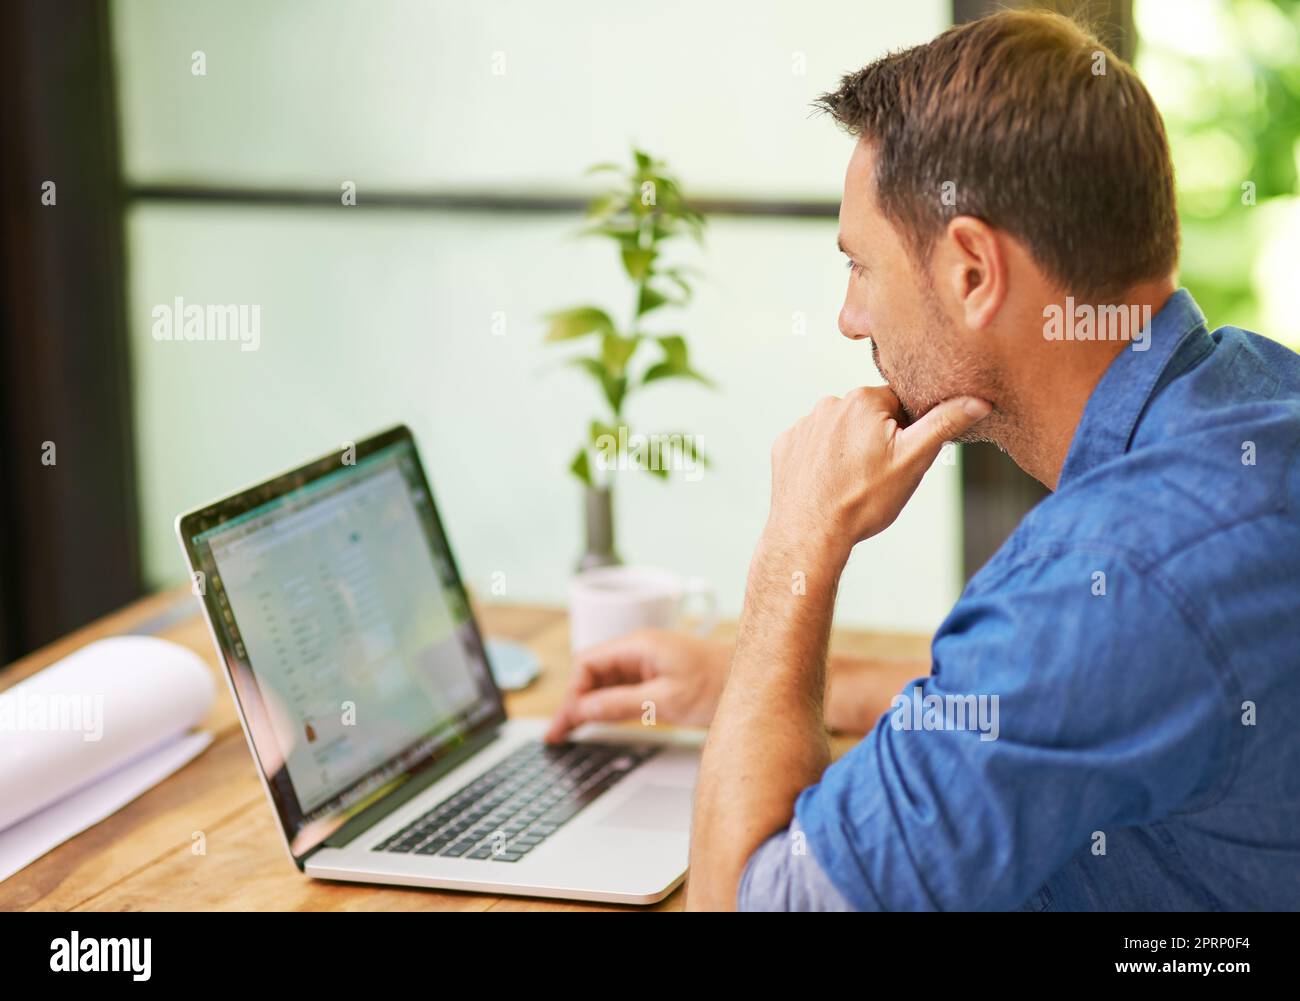 Concentré sur la tâche à accomplir. Un homme travaillant sur son ordinateur portable à la maison. Banque D'Images